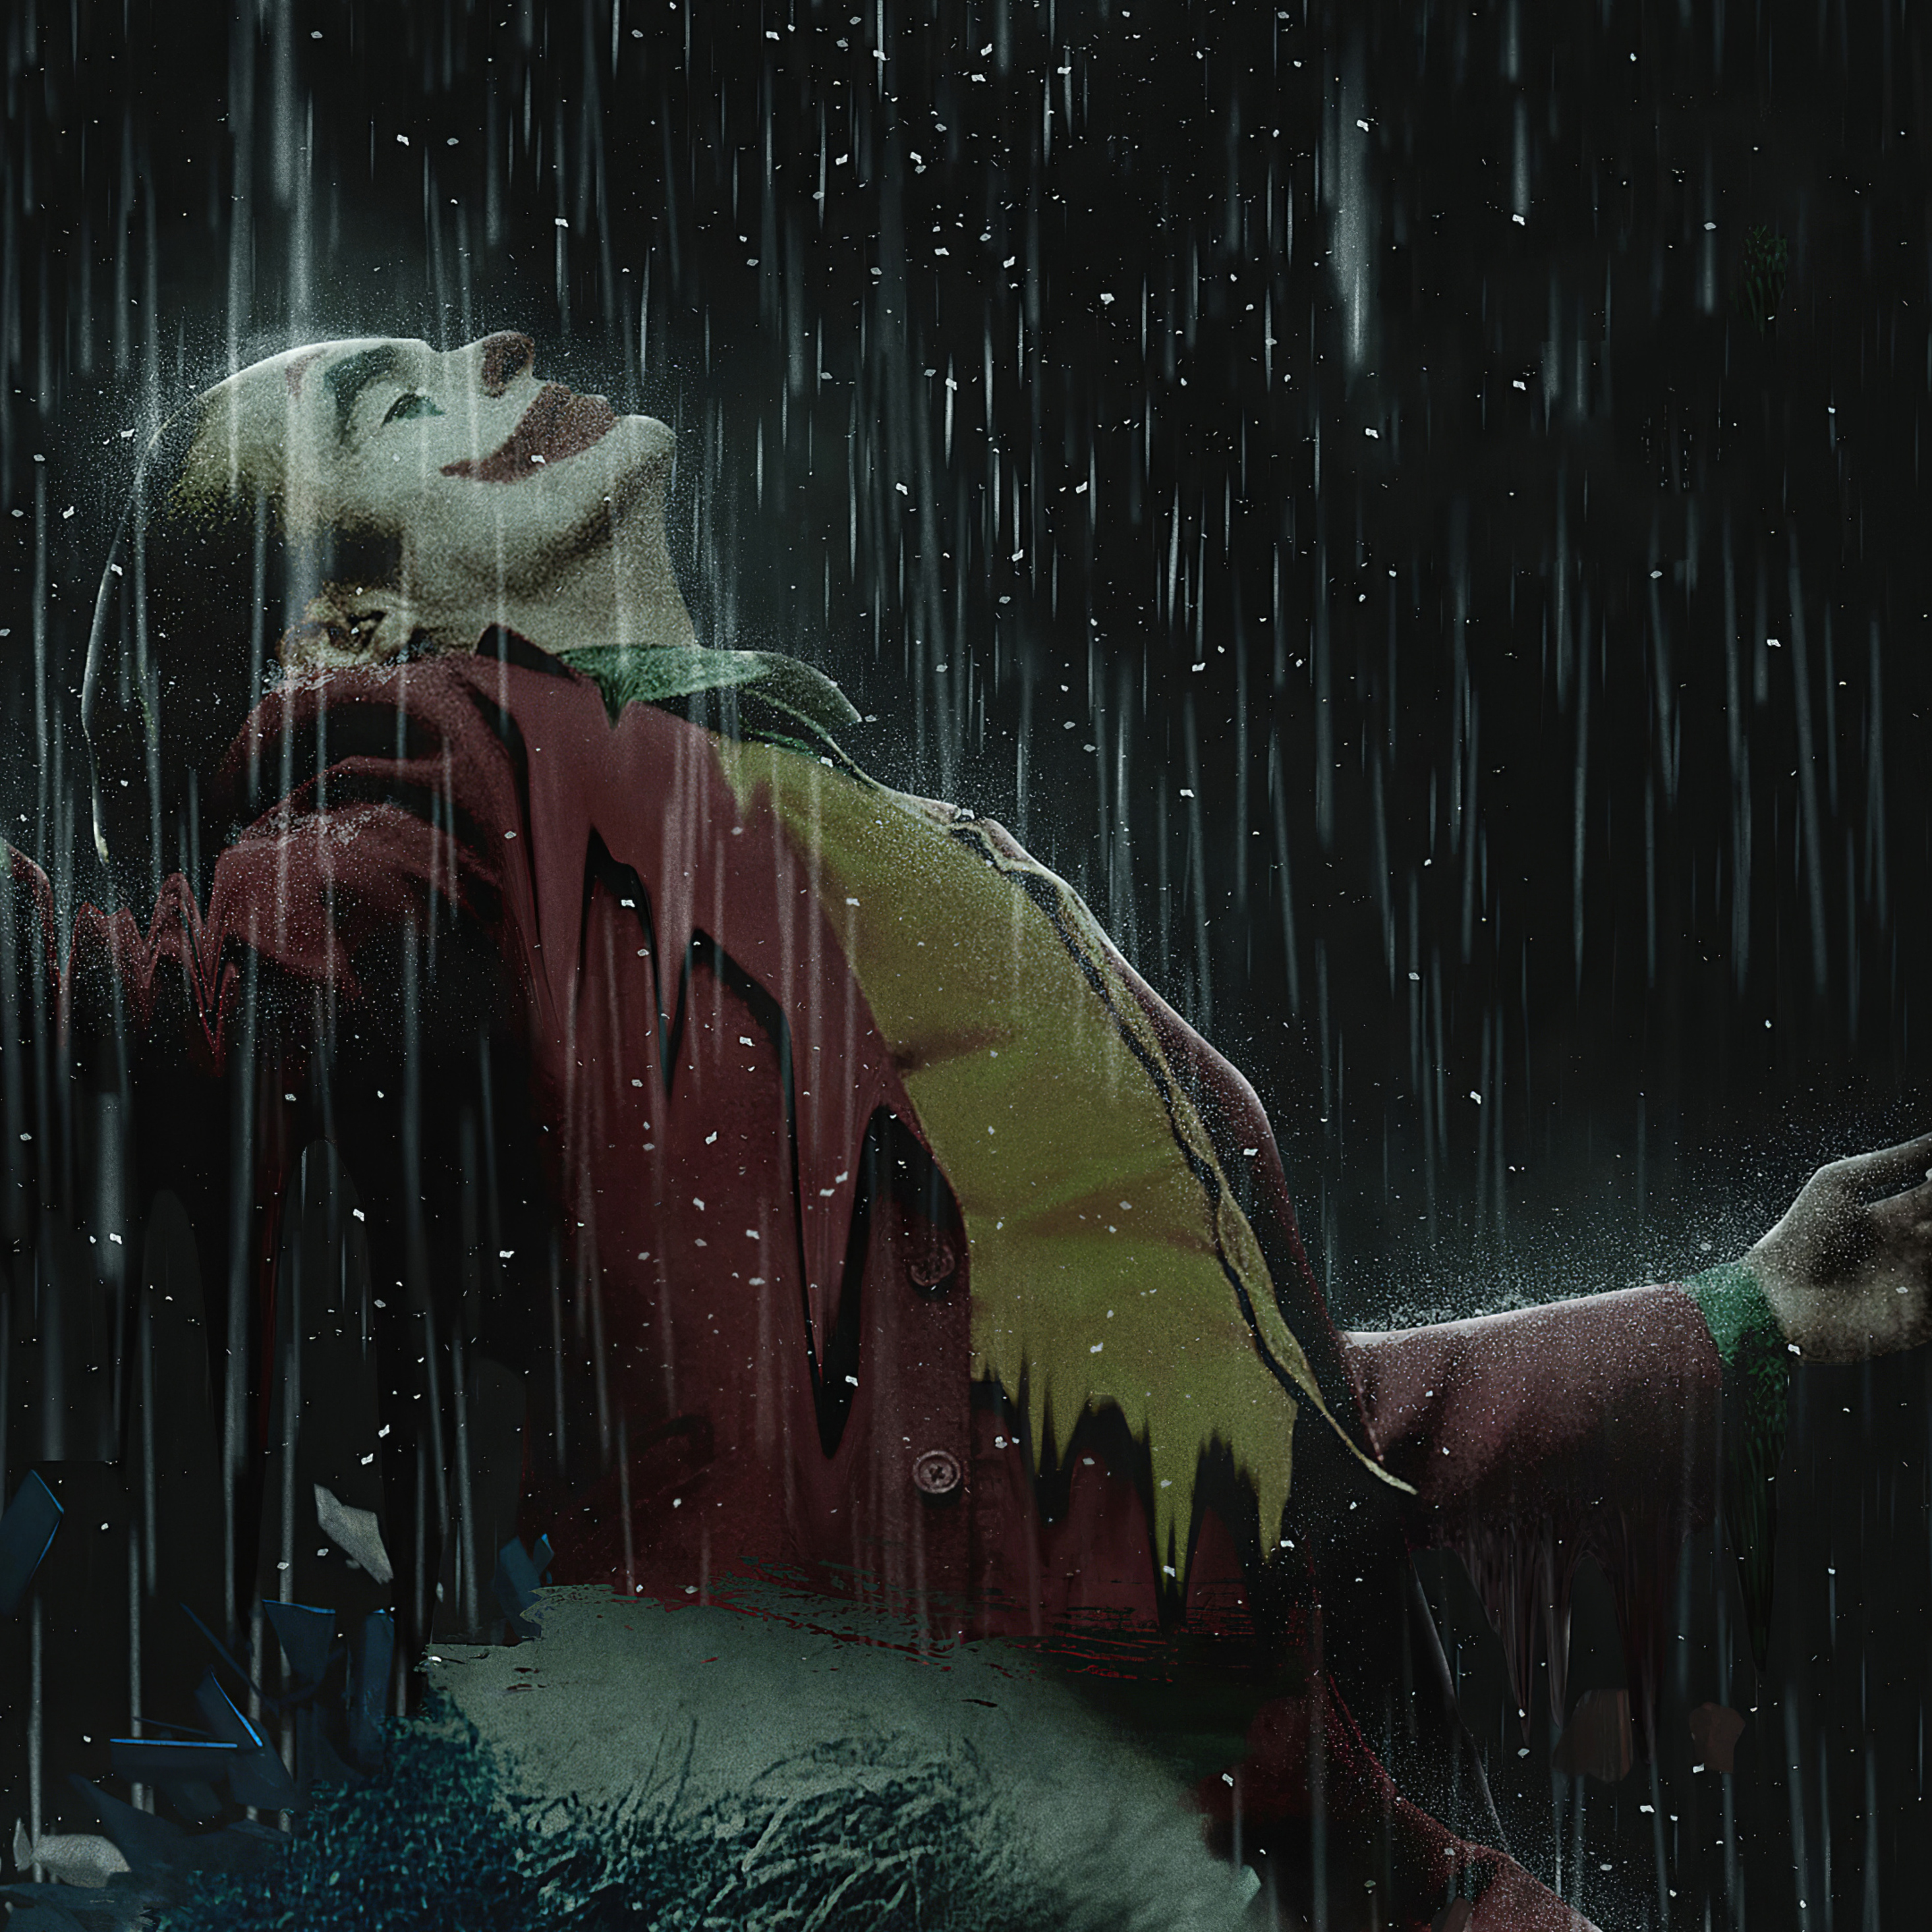 joker-in-rain-4k-10.jpg